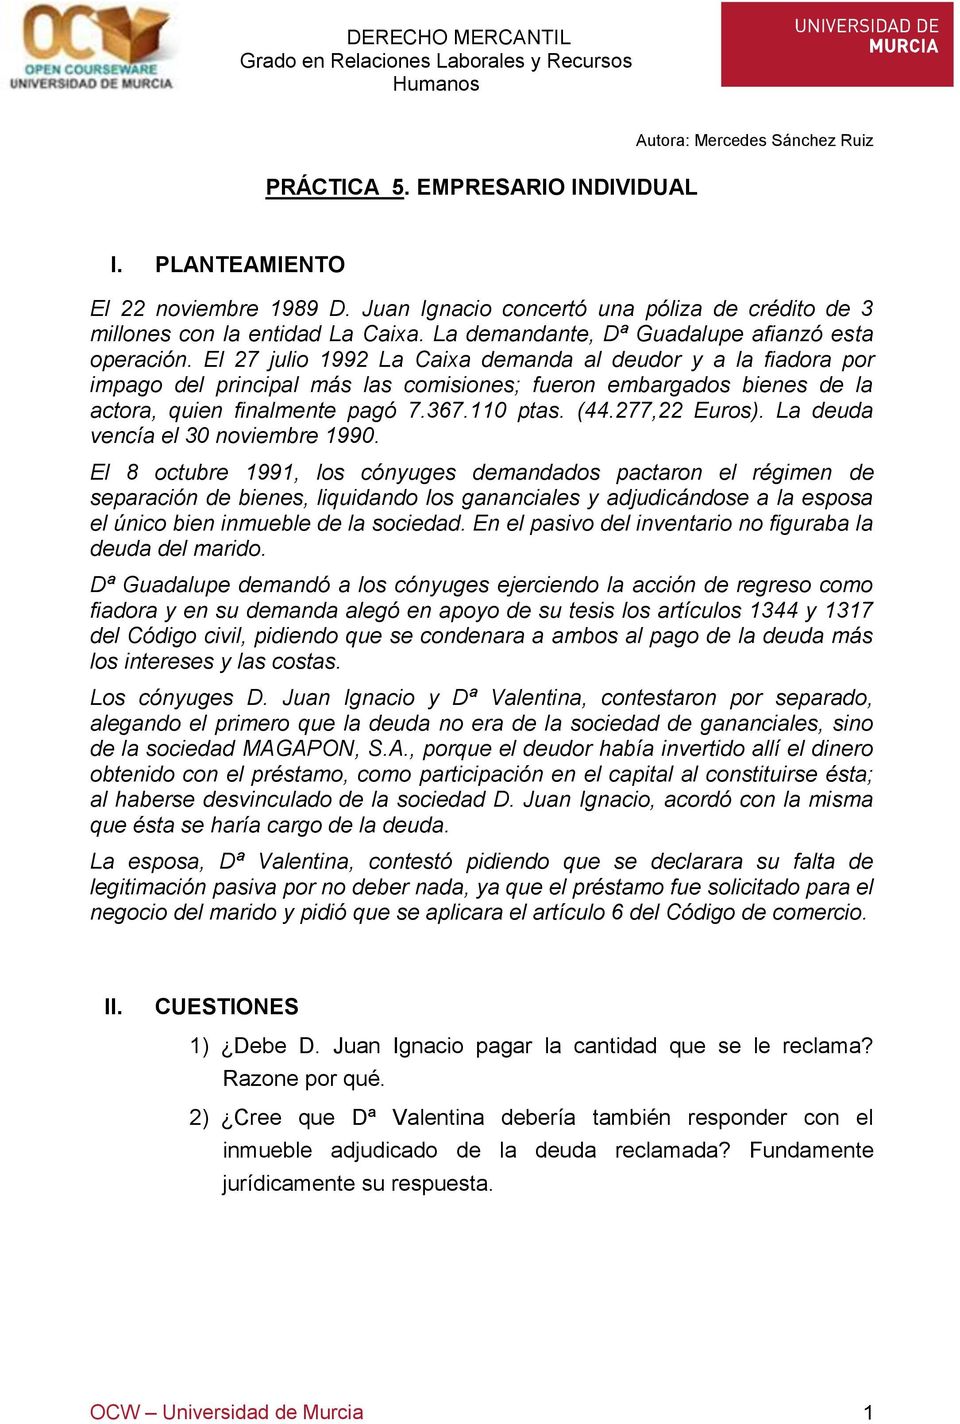 El 27 julio 1992 La Caixa demanda al deudor y a la fiadora por impago del principal más las comisiones; fueron embargados bienes de la actora, quien finalmente pagó 7.367.110 ptas. (44.277,22 Euros).